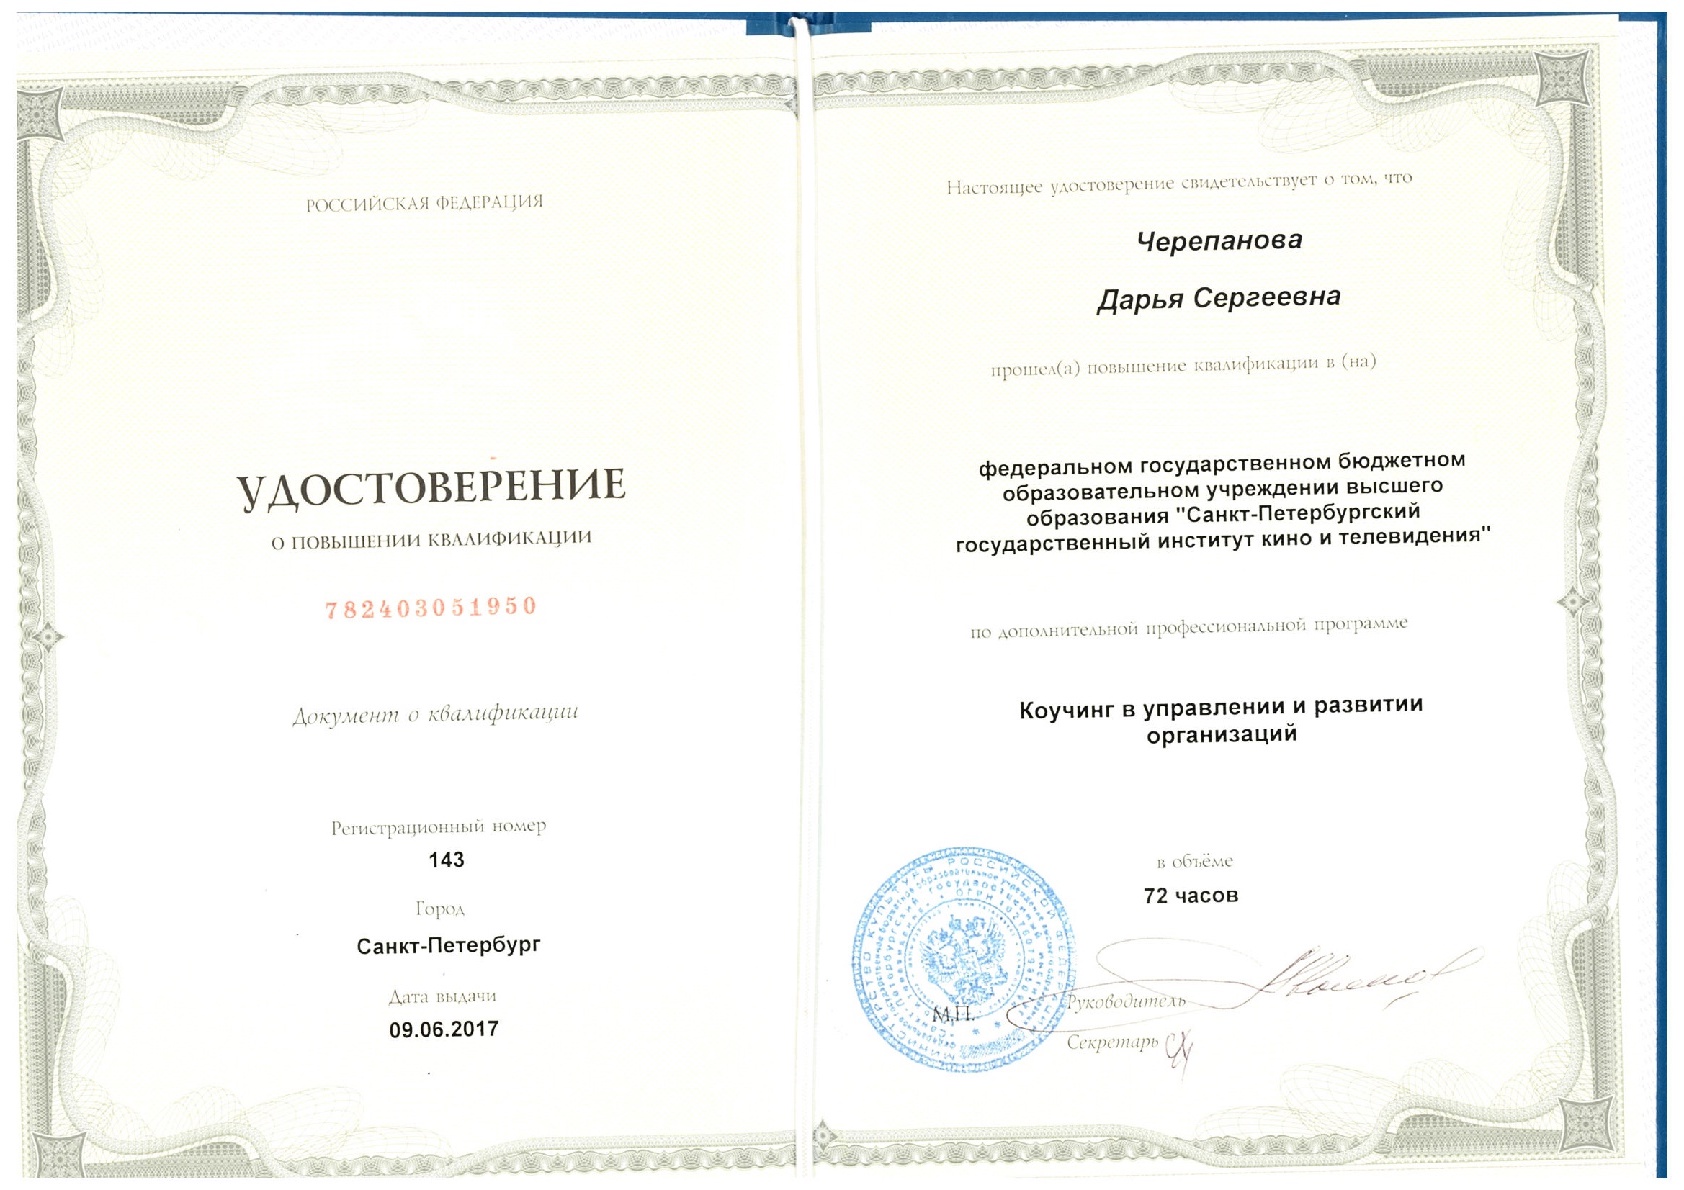 Удостоверение ФГБОУ ВО по программе «Коучинг в управлении и развитии организации»